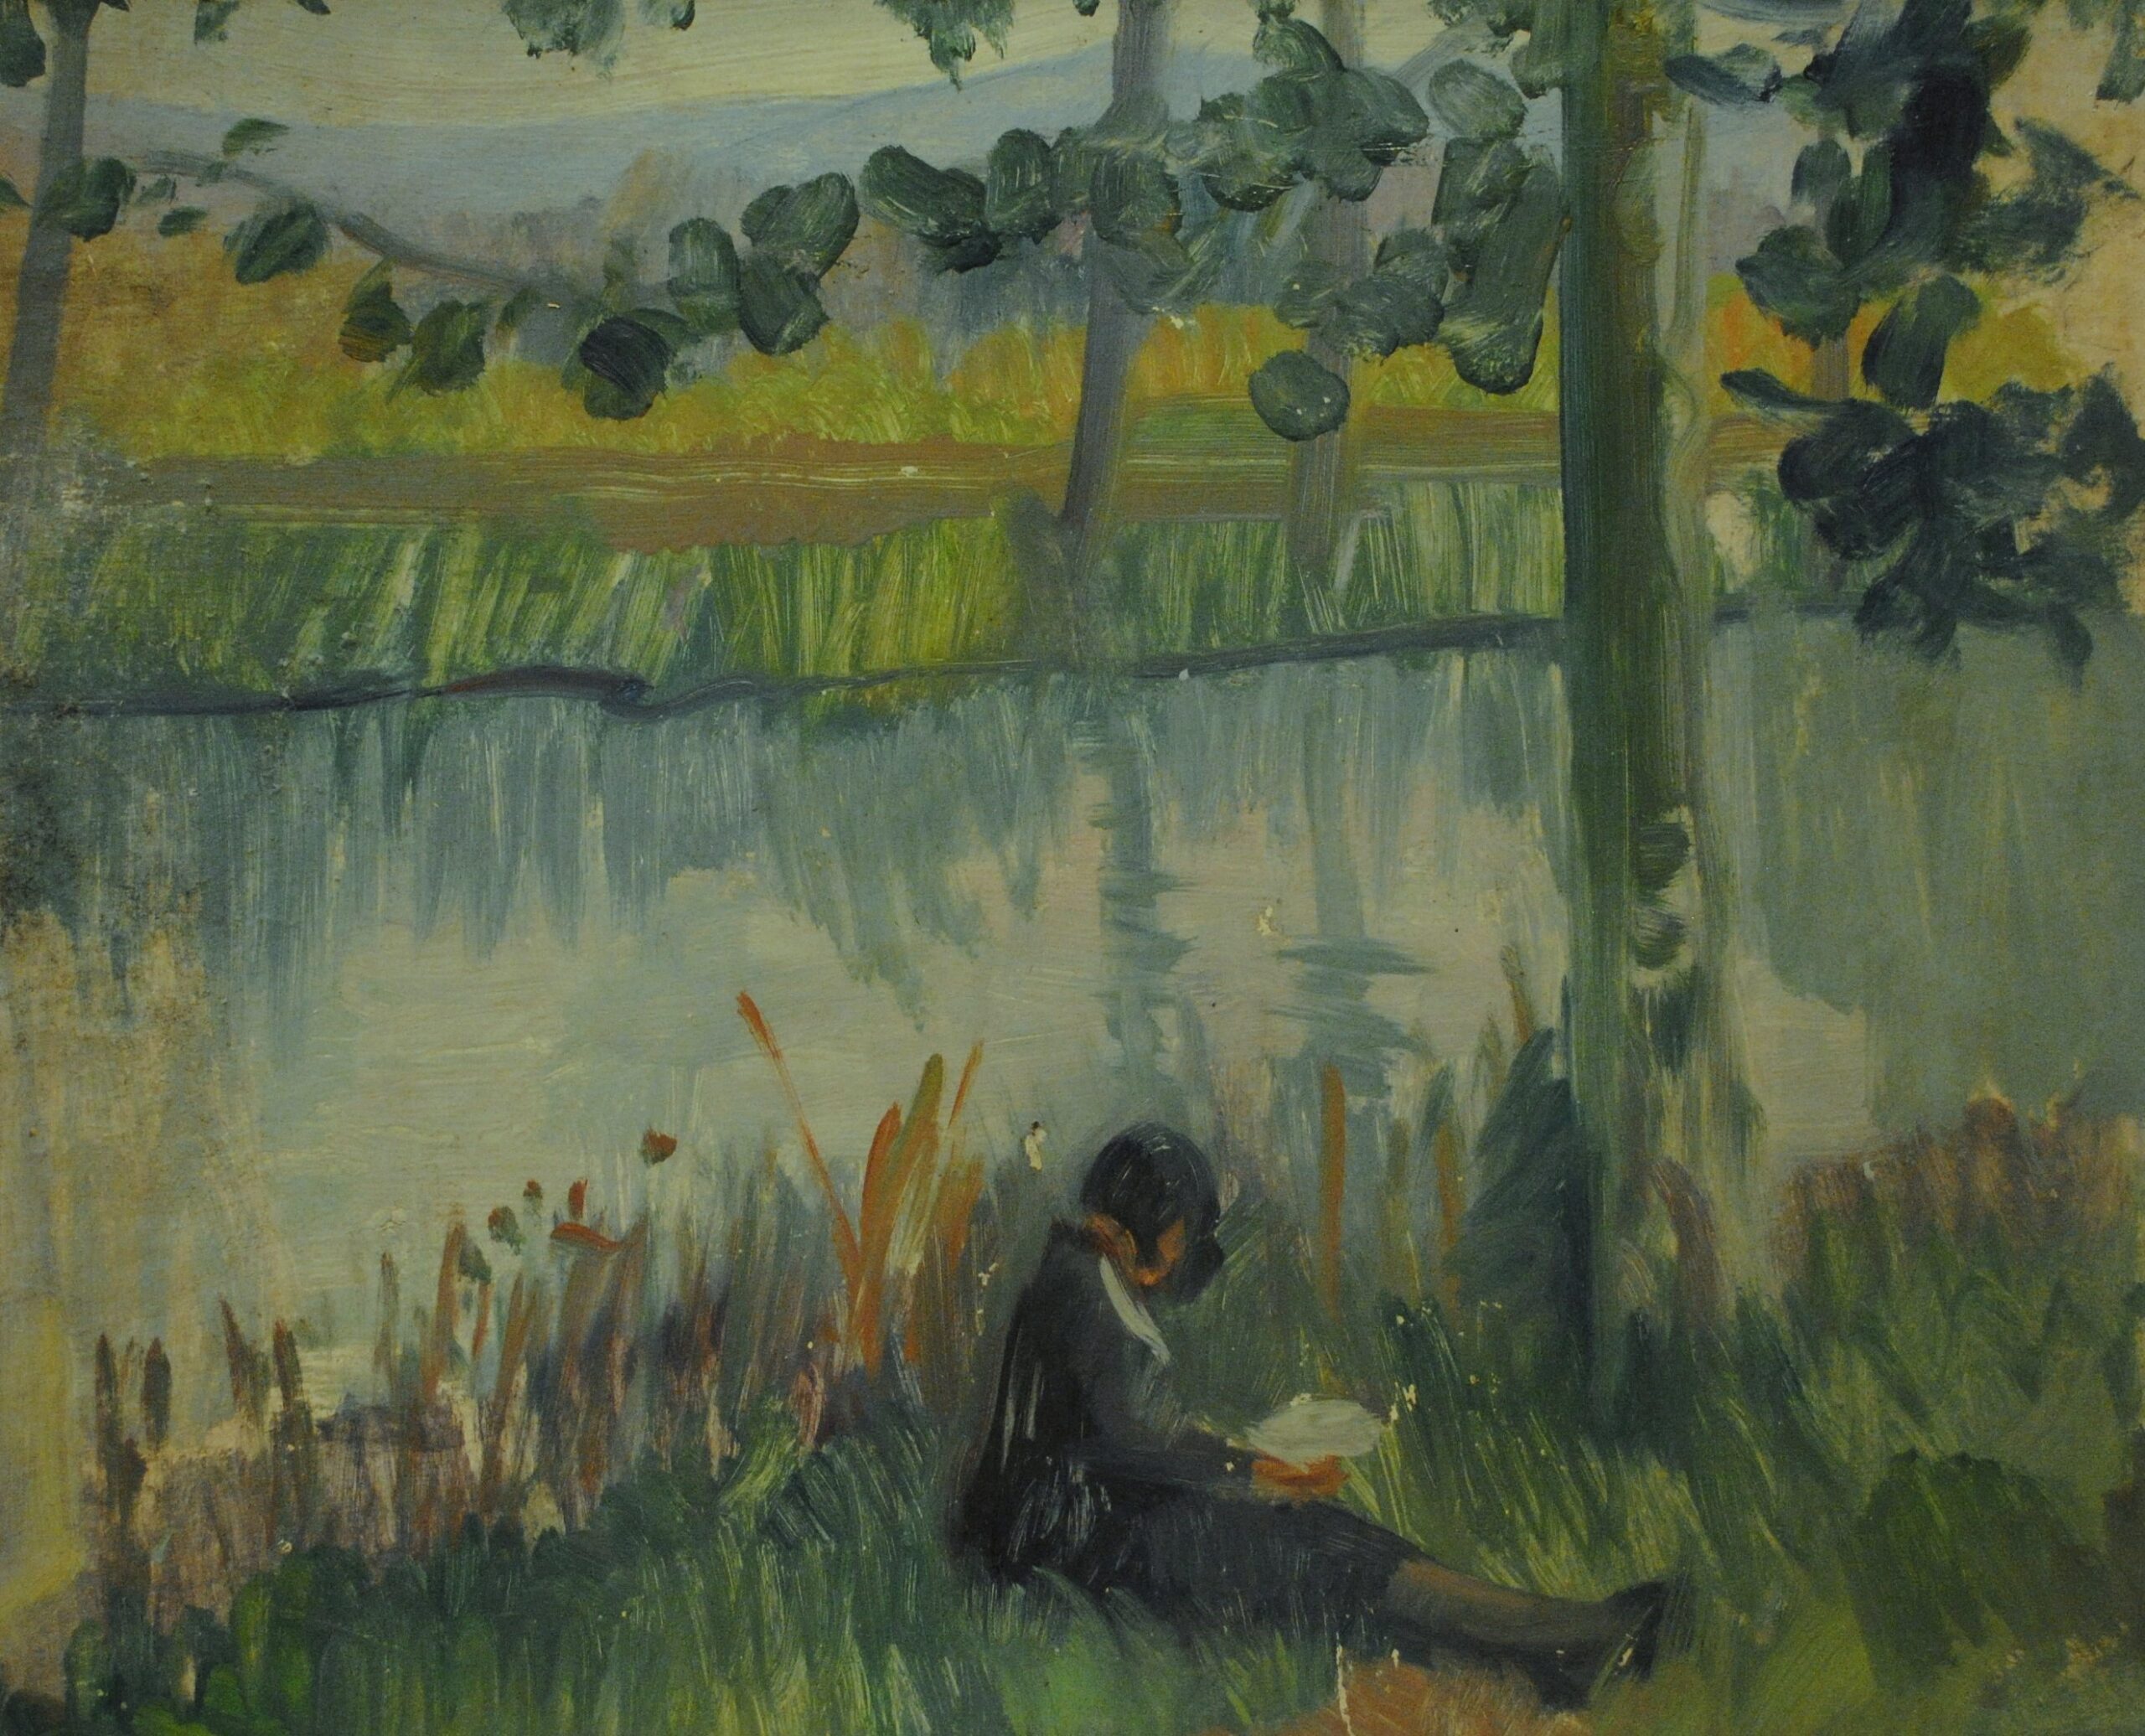 Pintura de José Manaut titulada Ángeles leyendo junto al río, Tortosa, 1935. Óleo sobre cartón.